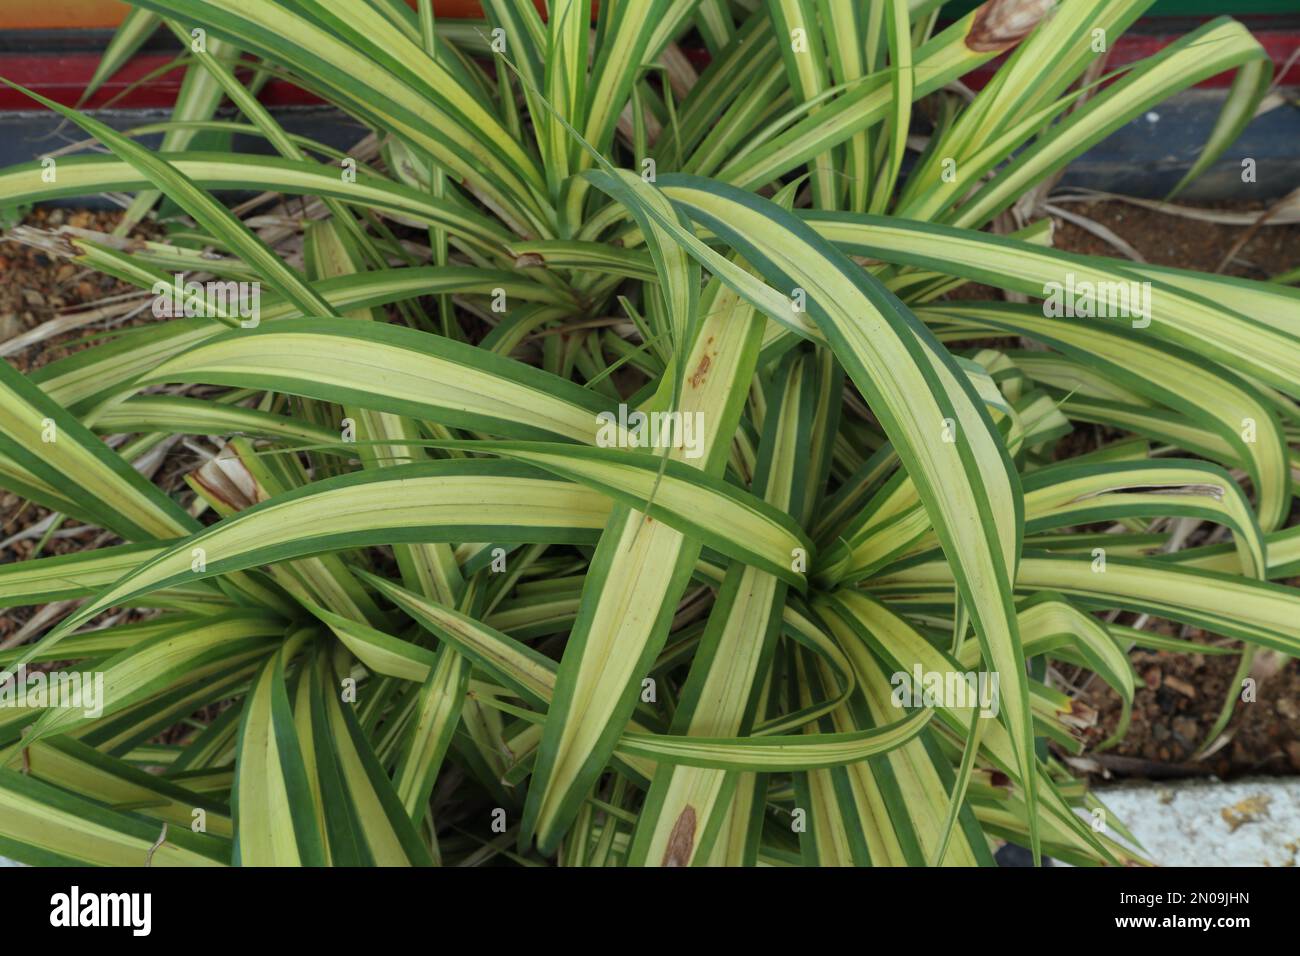 Plante foliaire verte et jaune connue sous le nom de Pandanus Variegata dans le jardin Banque D'Images